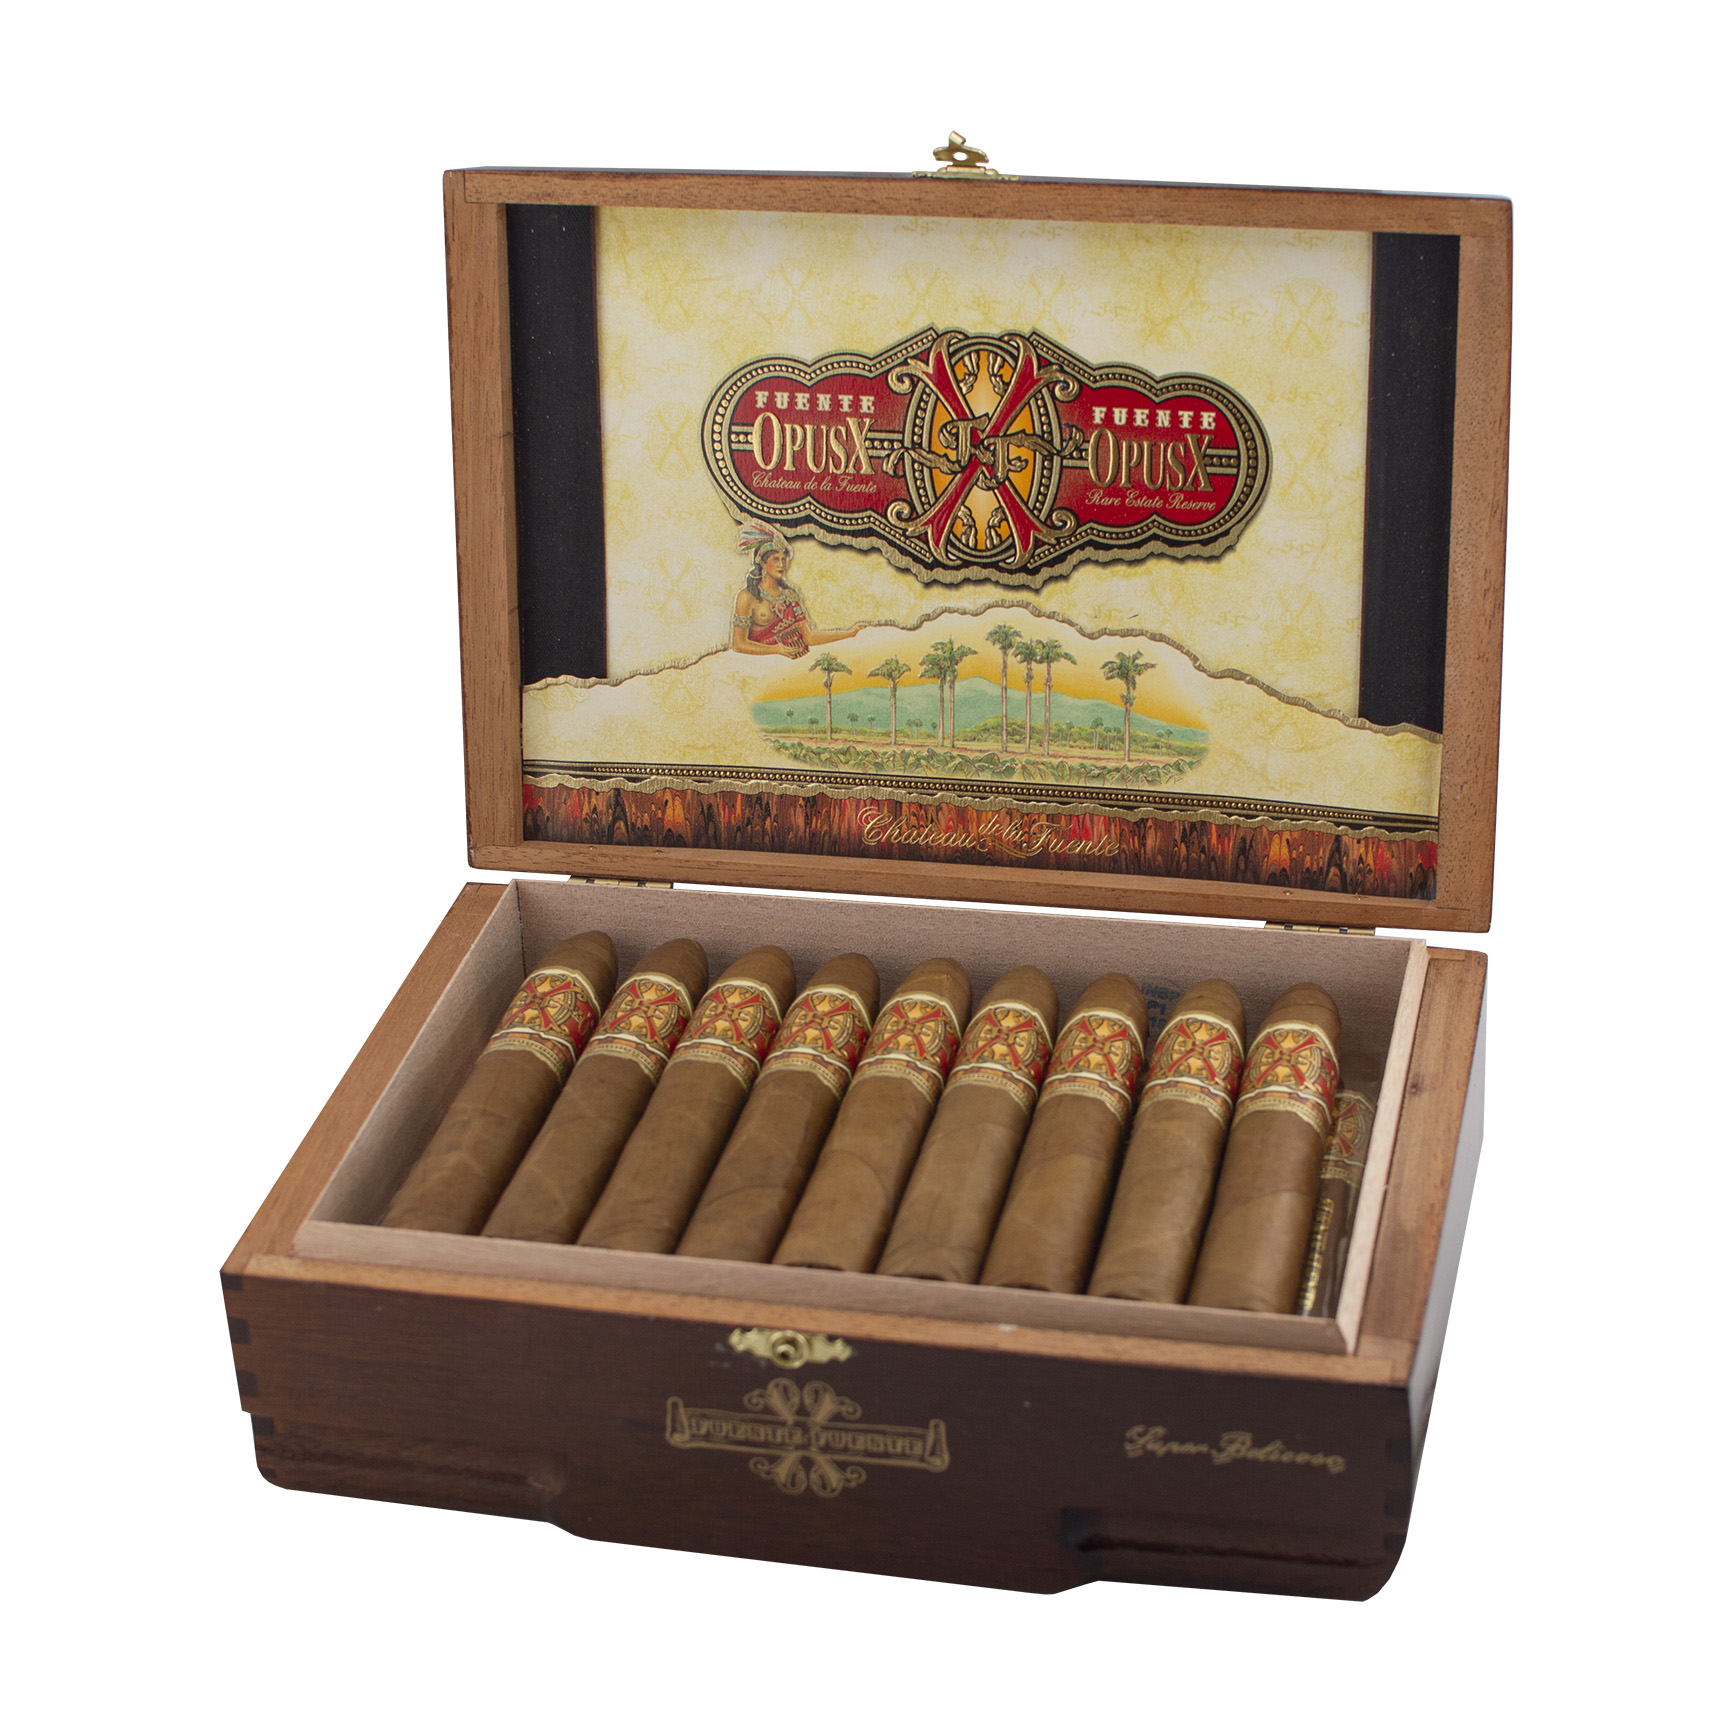 Arturo Fuente Opus X Super Belicoso Cigar - Box of 29